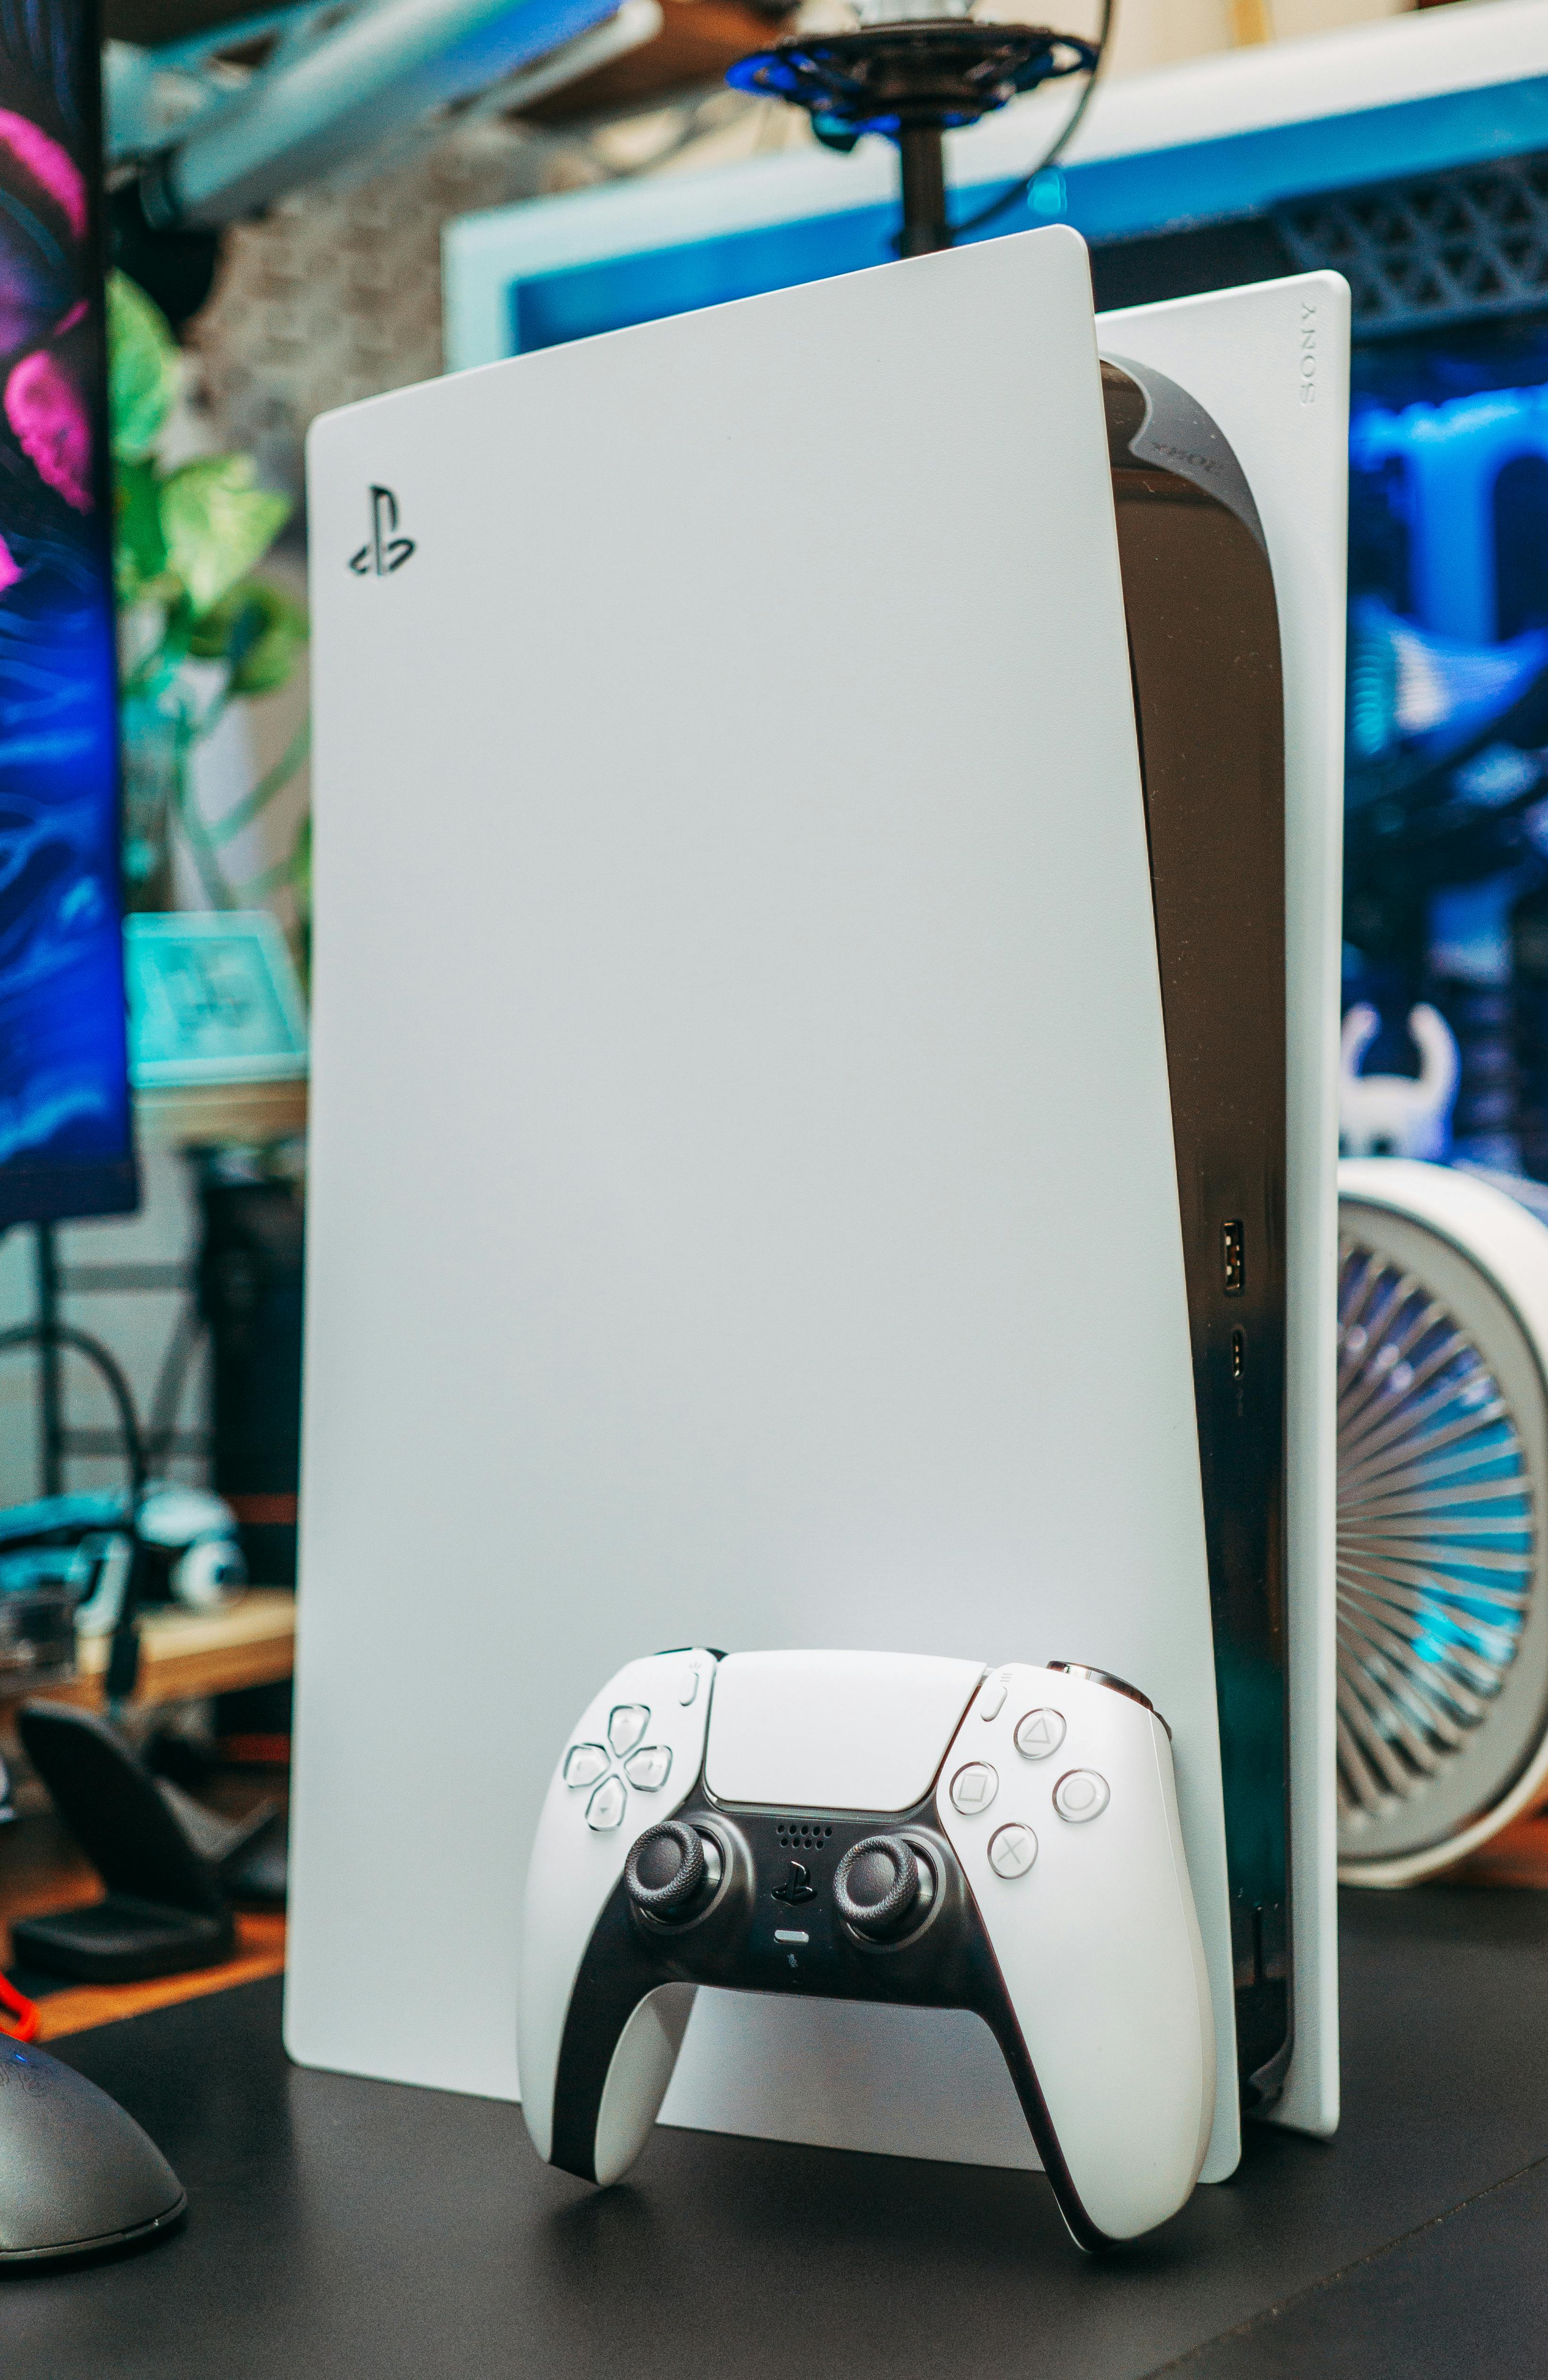 Une PlayStation avec une manette de jeu | Source : Pexels